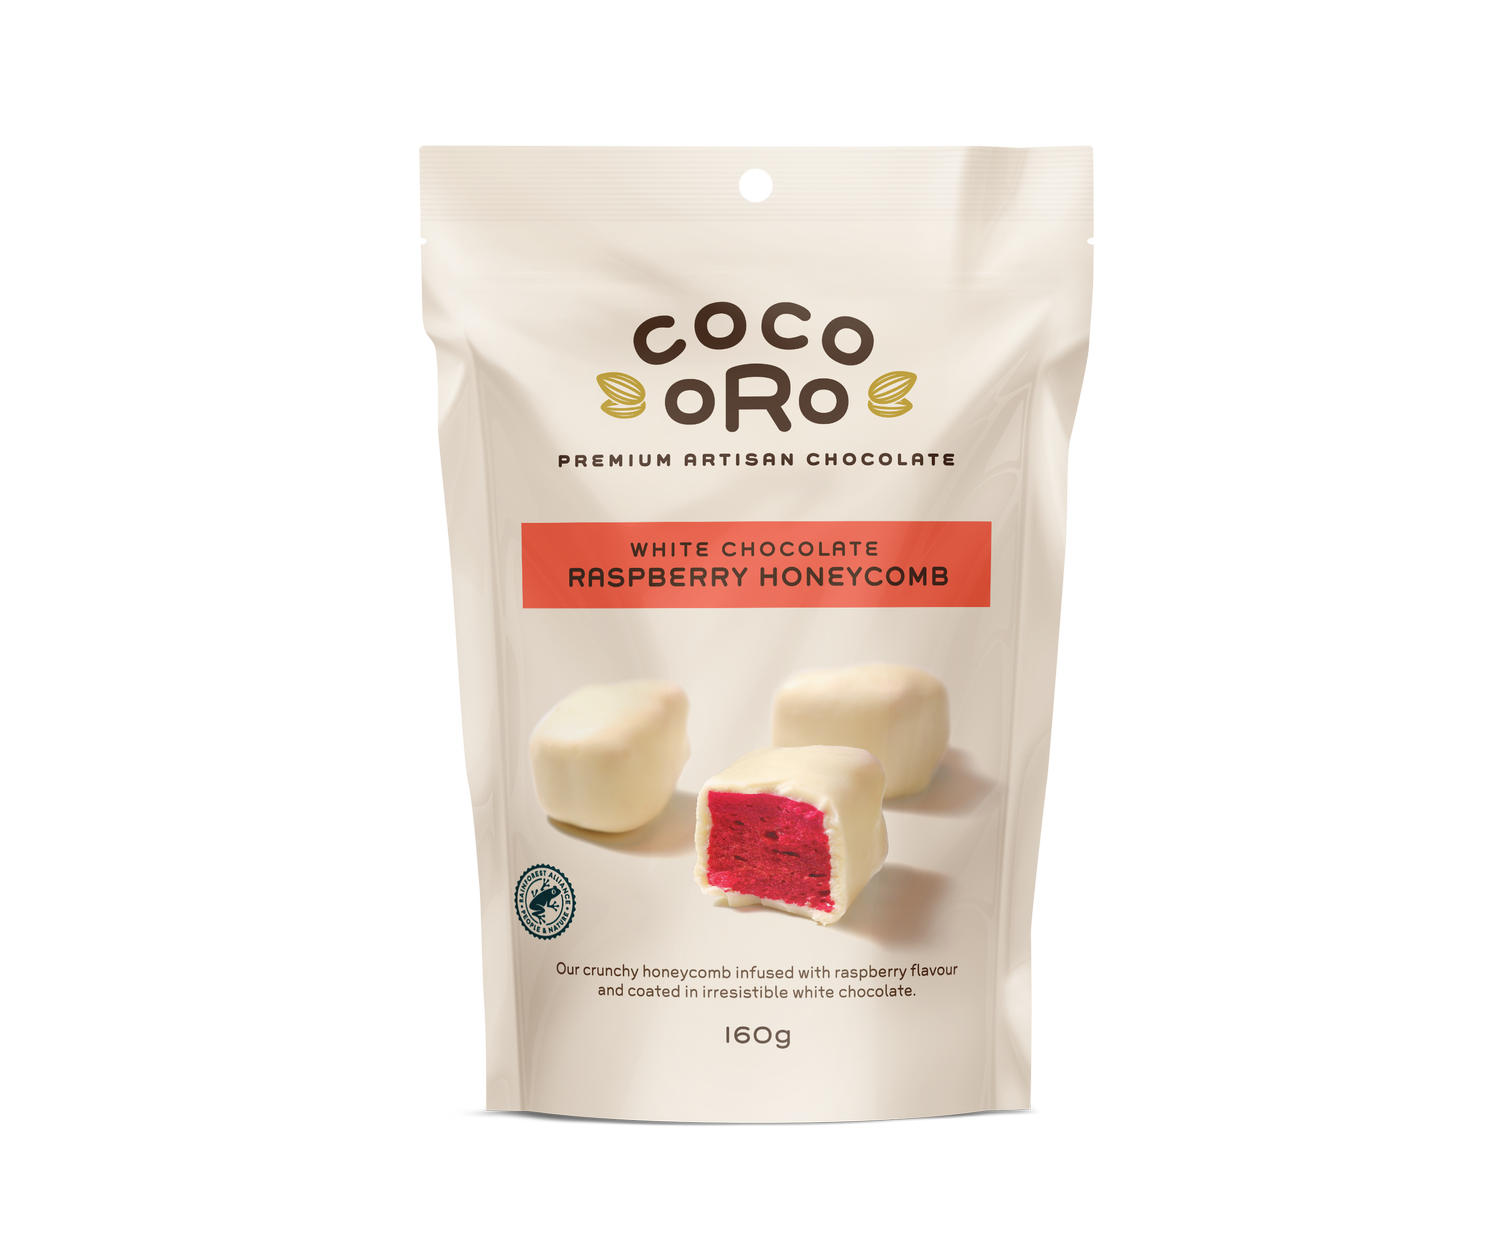 Coco Oro White Chocolate Raspberry Honeycomb 160g